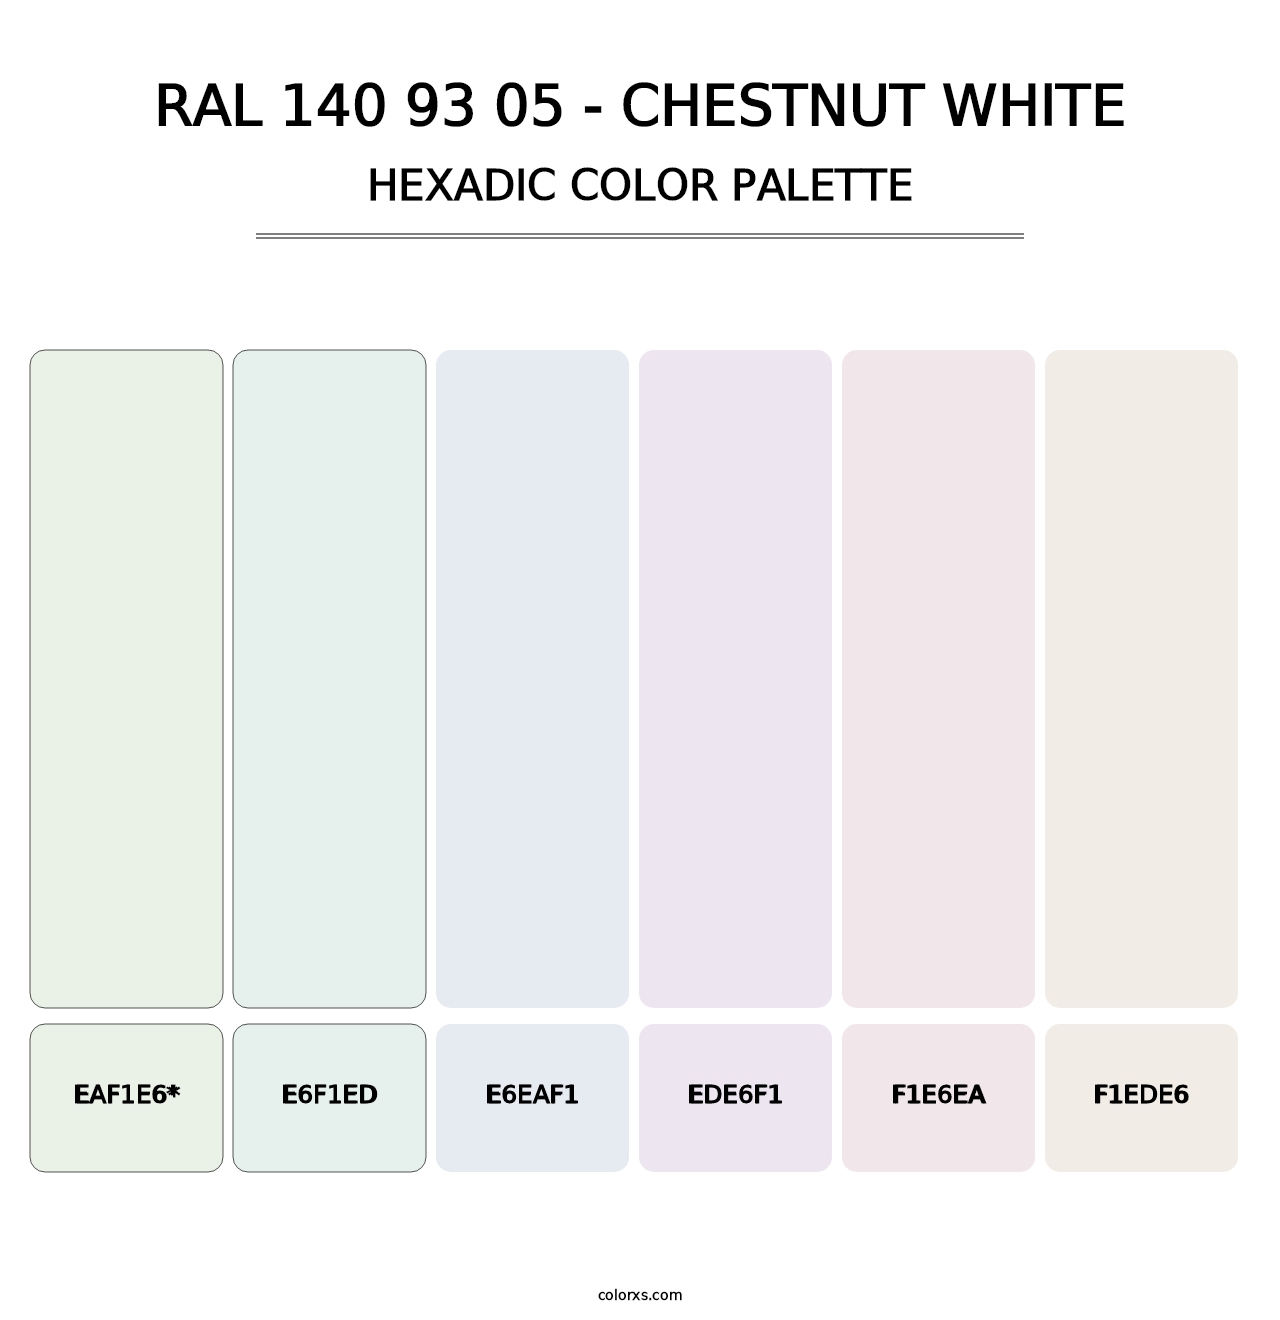 RAL 140 93 05 - Chestnut White - Hexadic Color Palette